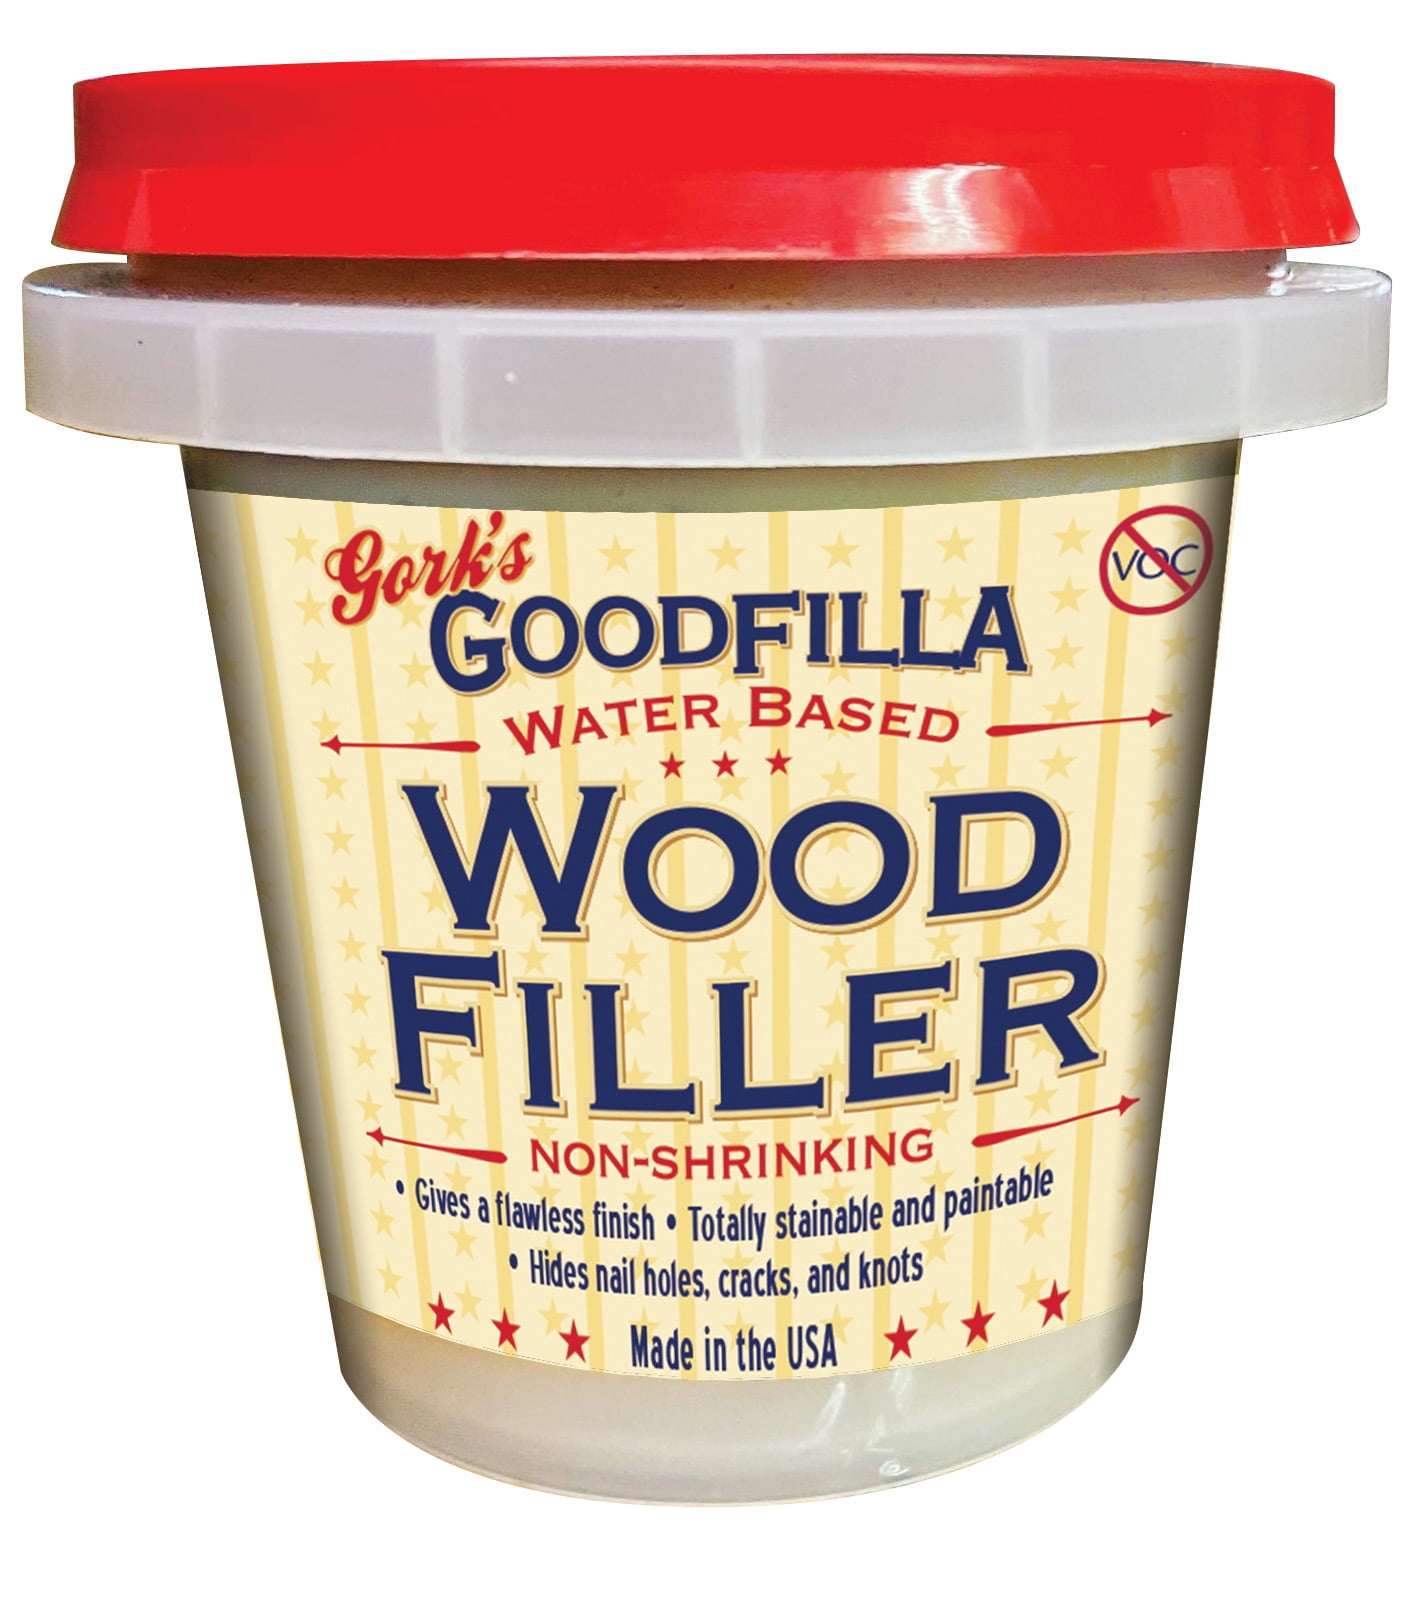 Wood Repair Knot Filler - The best wood repair system